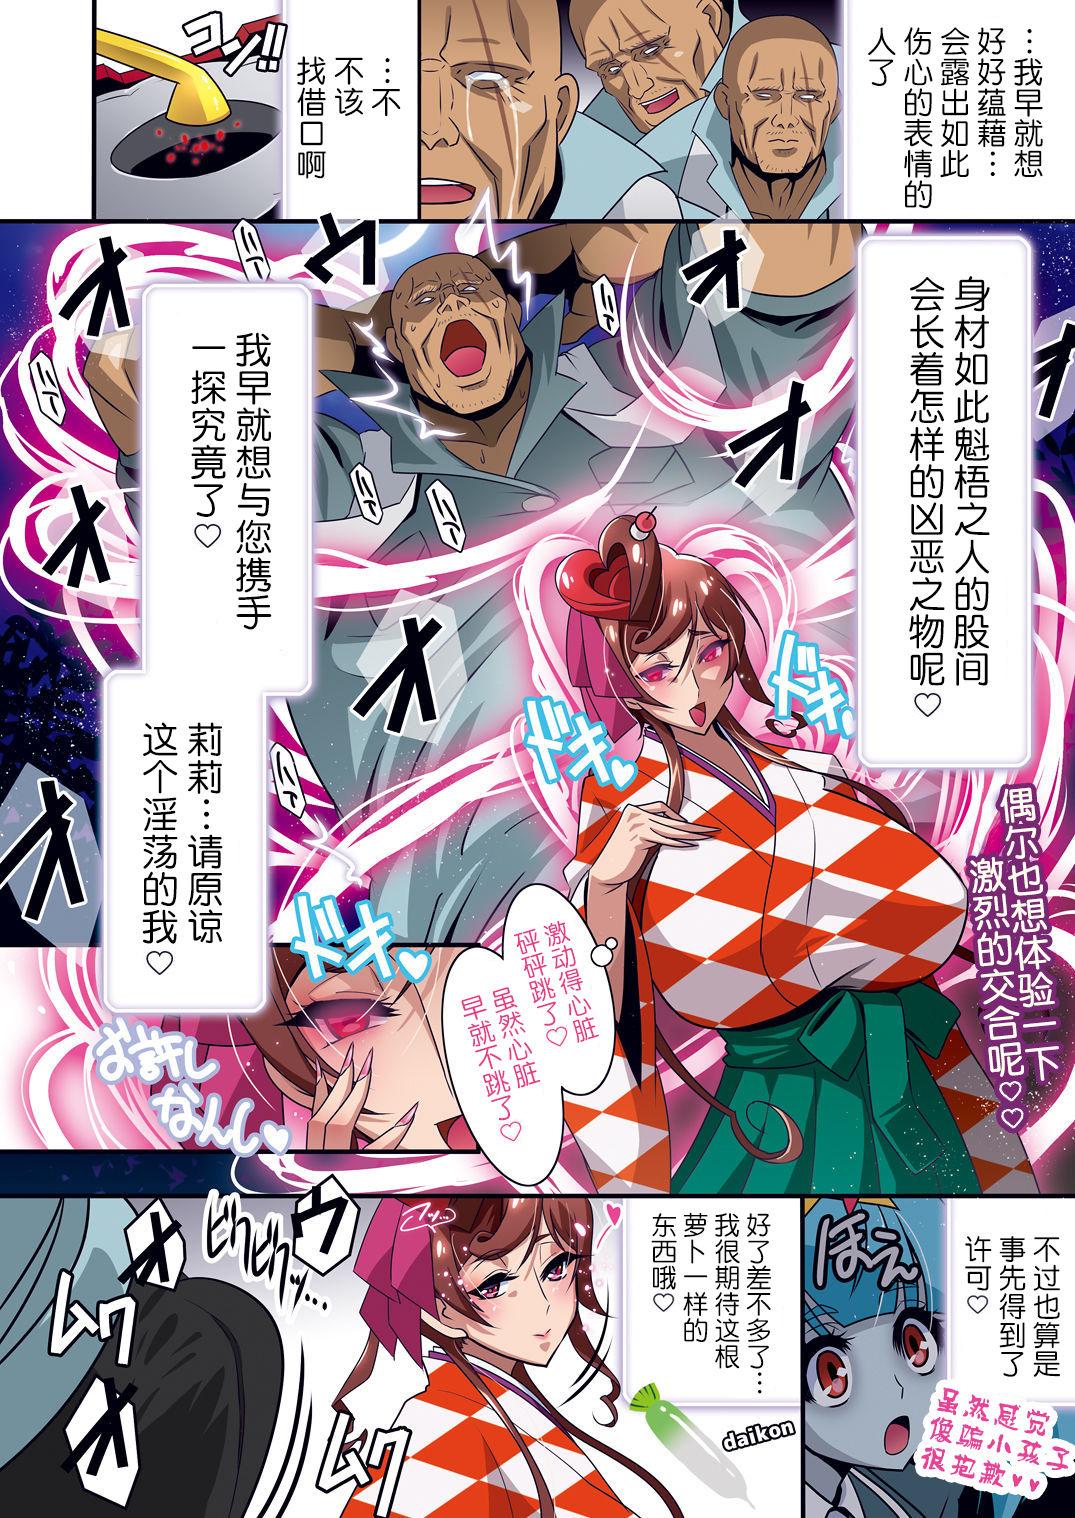 Dorm Nee-san vs Chougokubuto Yuugiri Tai Takeo Gekka no Koubousen - Zombie land saga Facials - Page 7